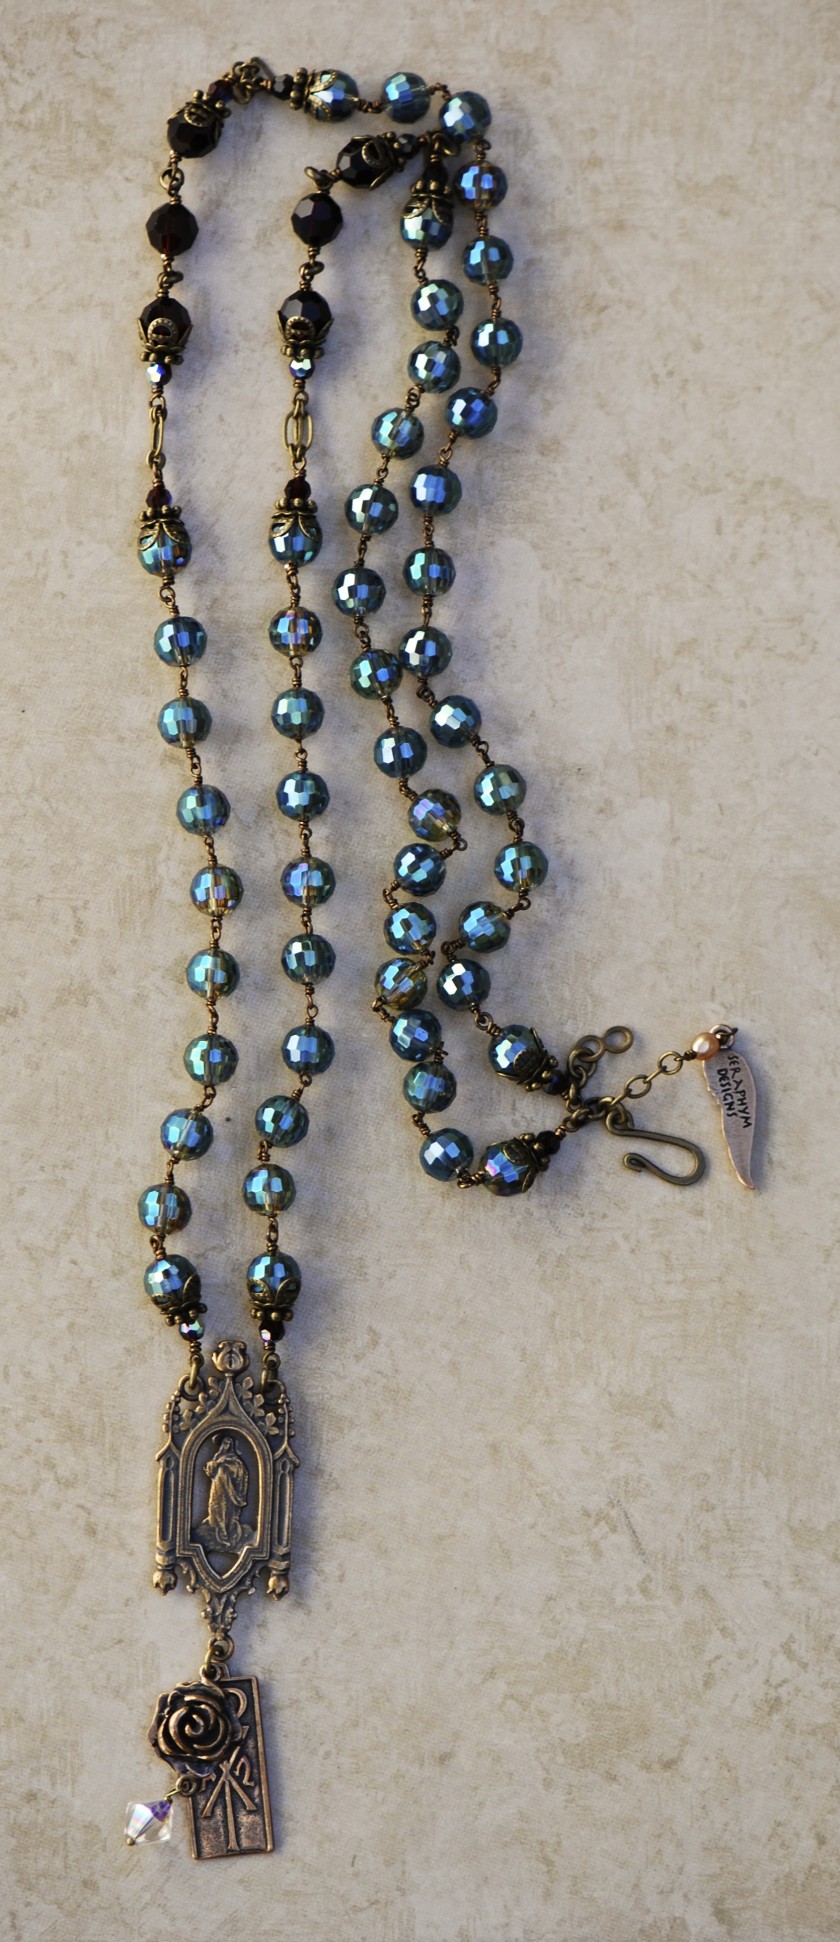 The Seraphym Necklace of Prayer (Aqua)